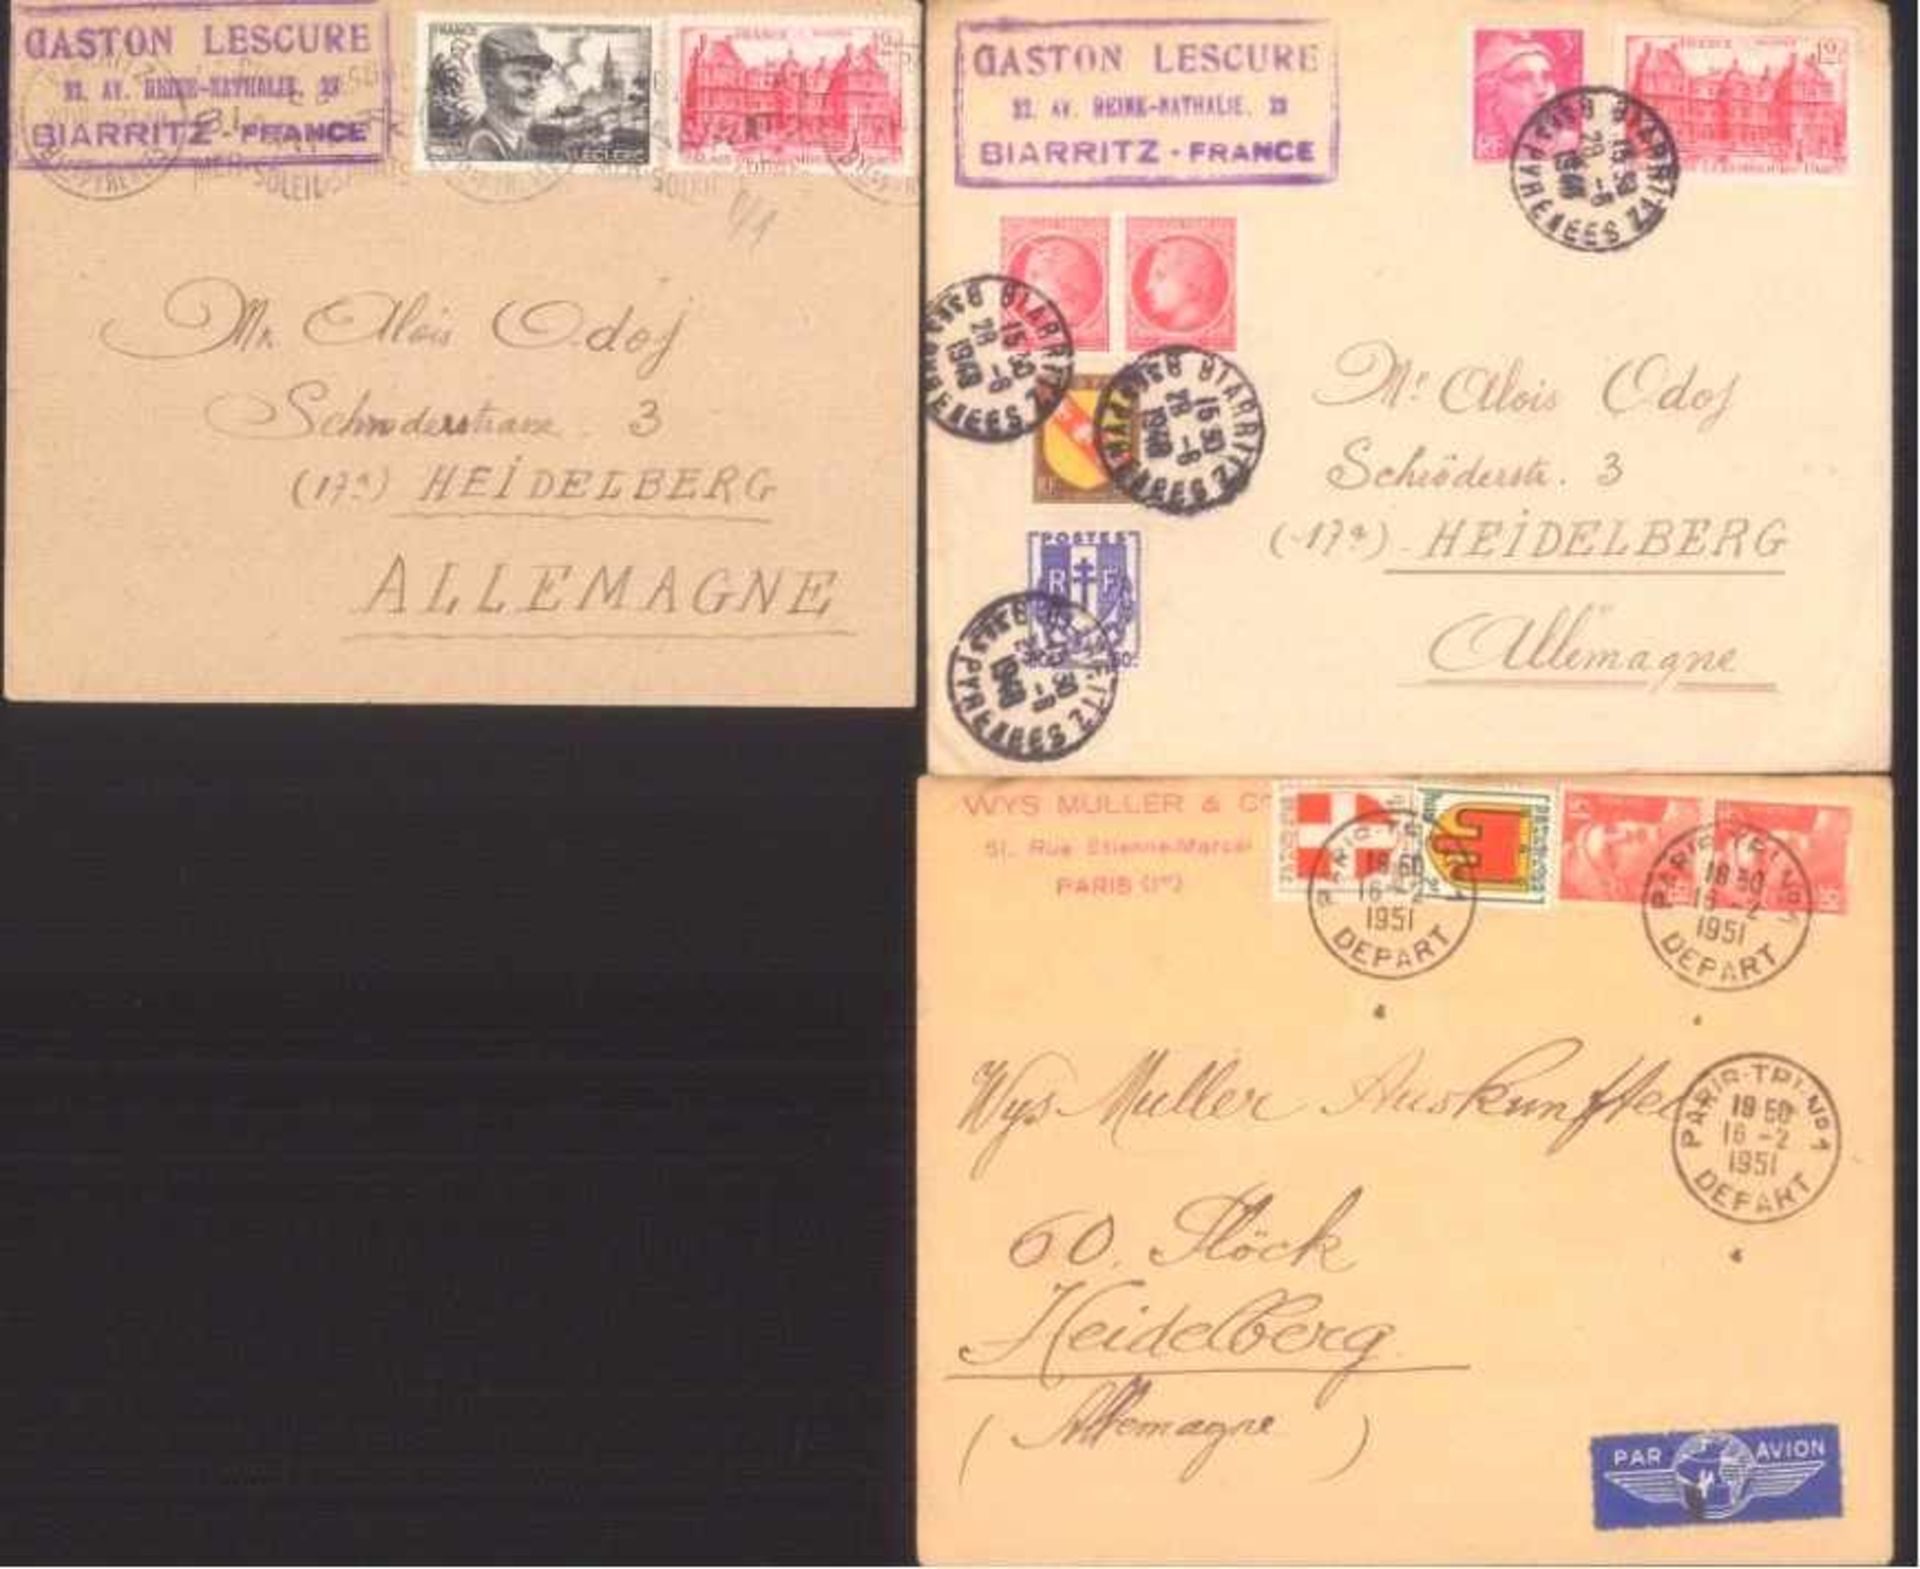 FRANKREICH 1948-1955, Belegelot, mit Luftpost!Lot von 23 Belegen aus 1948-1955. Fast alle nach - Bild 4 aus 4